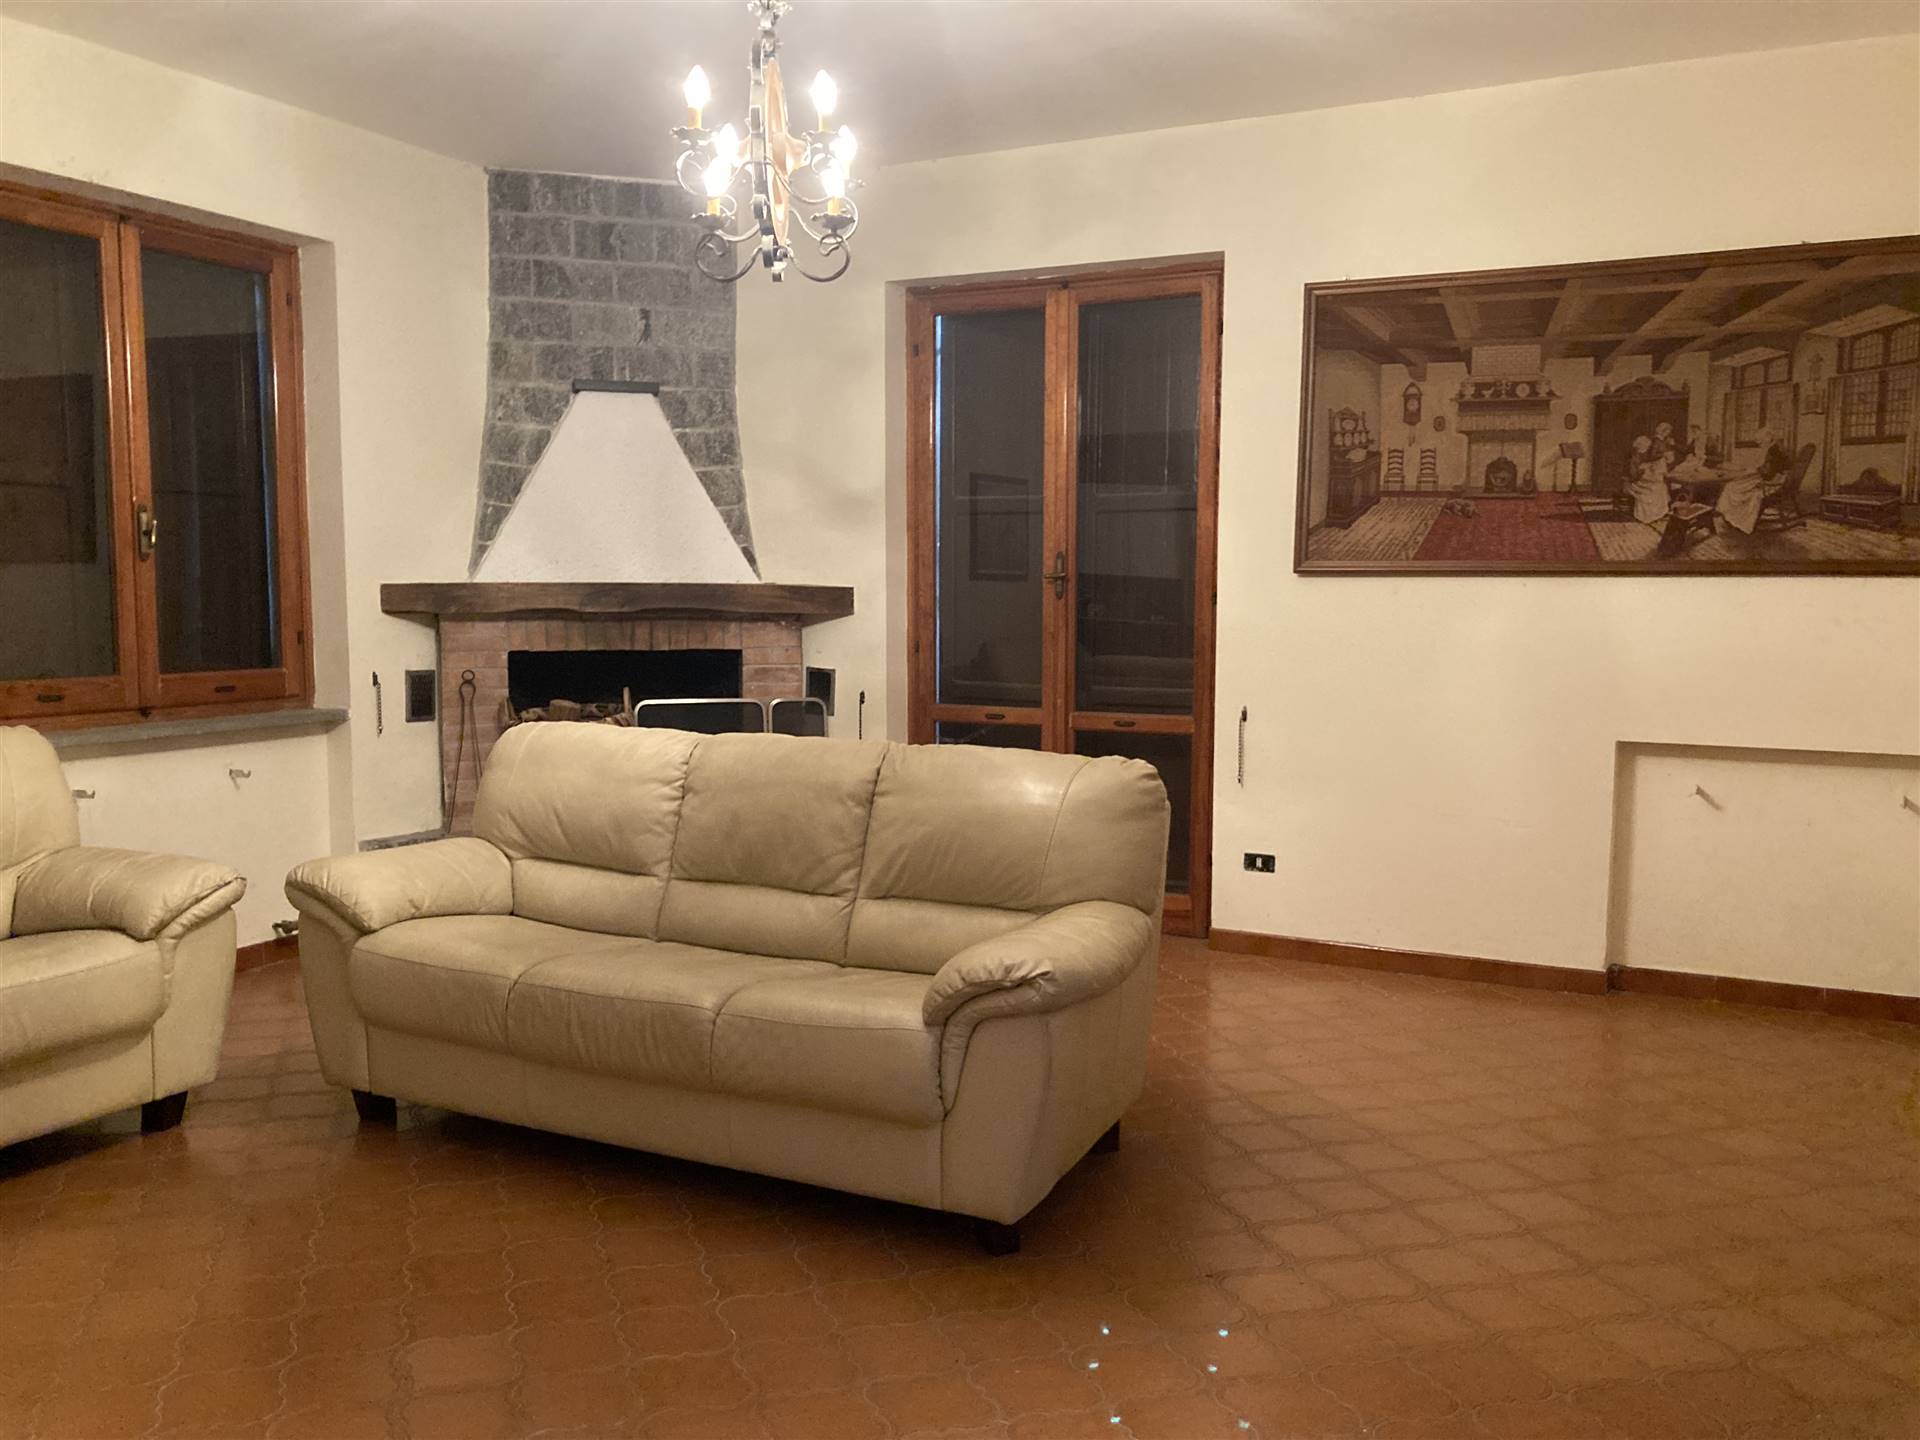 Villa in Località Cheirasca 40 in zona Pratolungo a Gavi